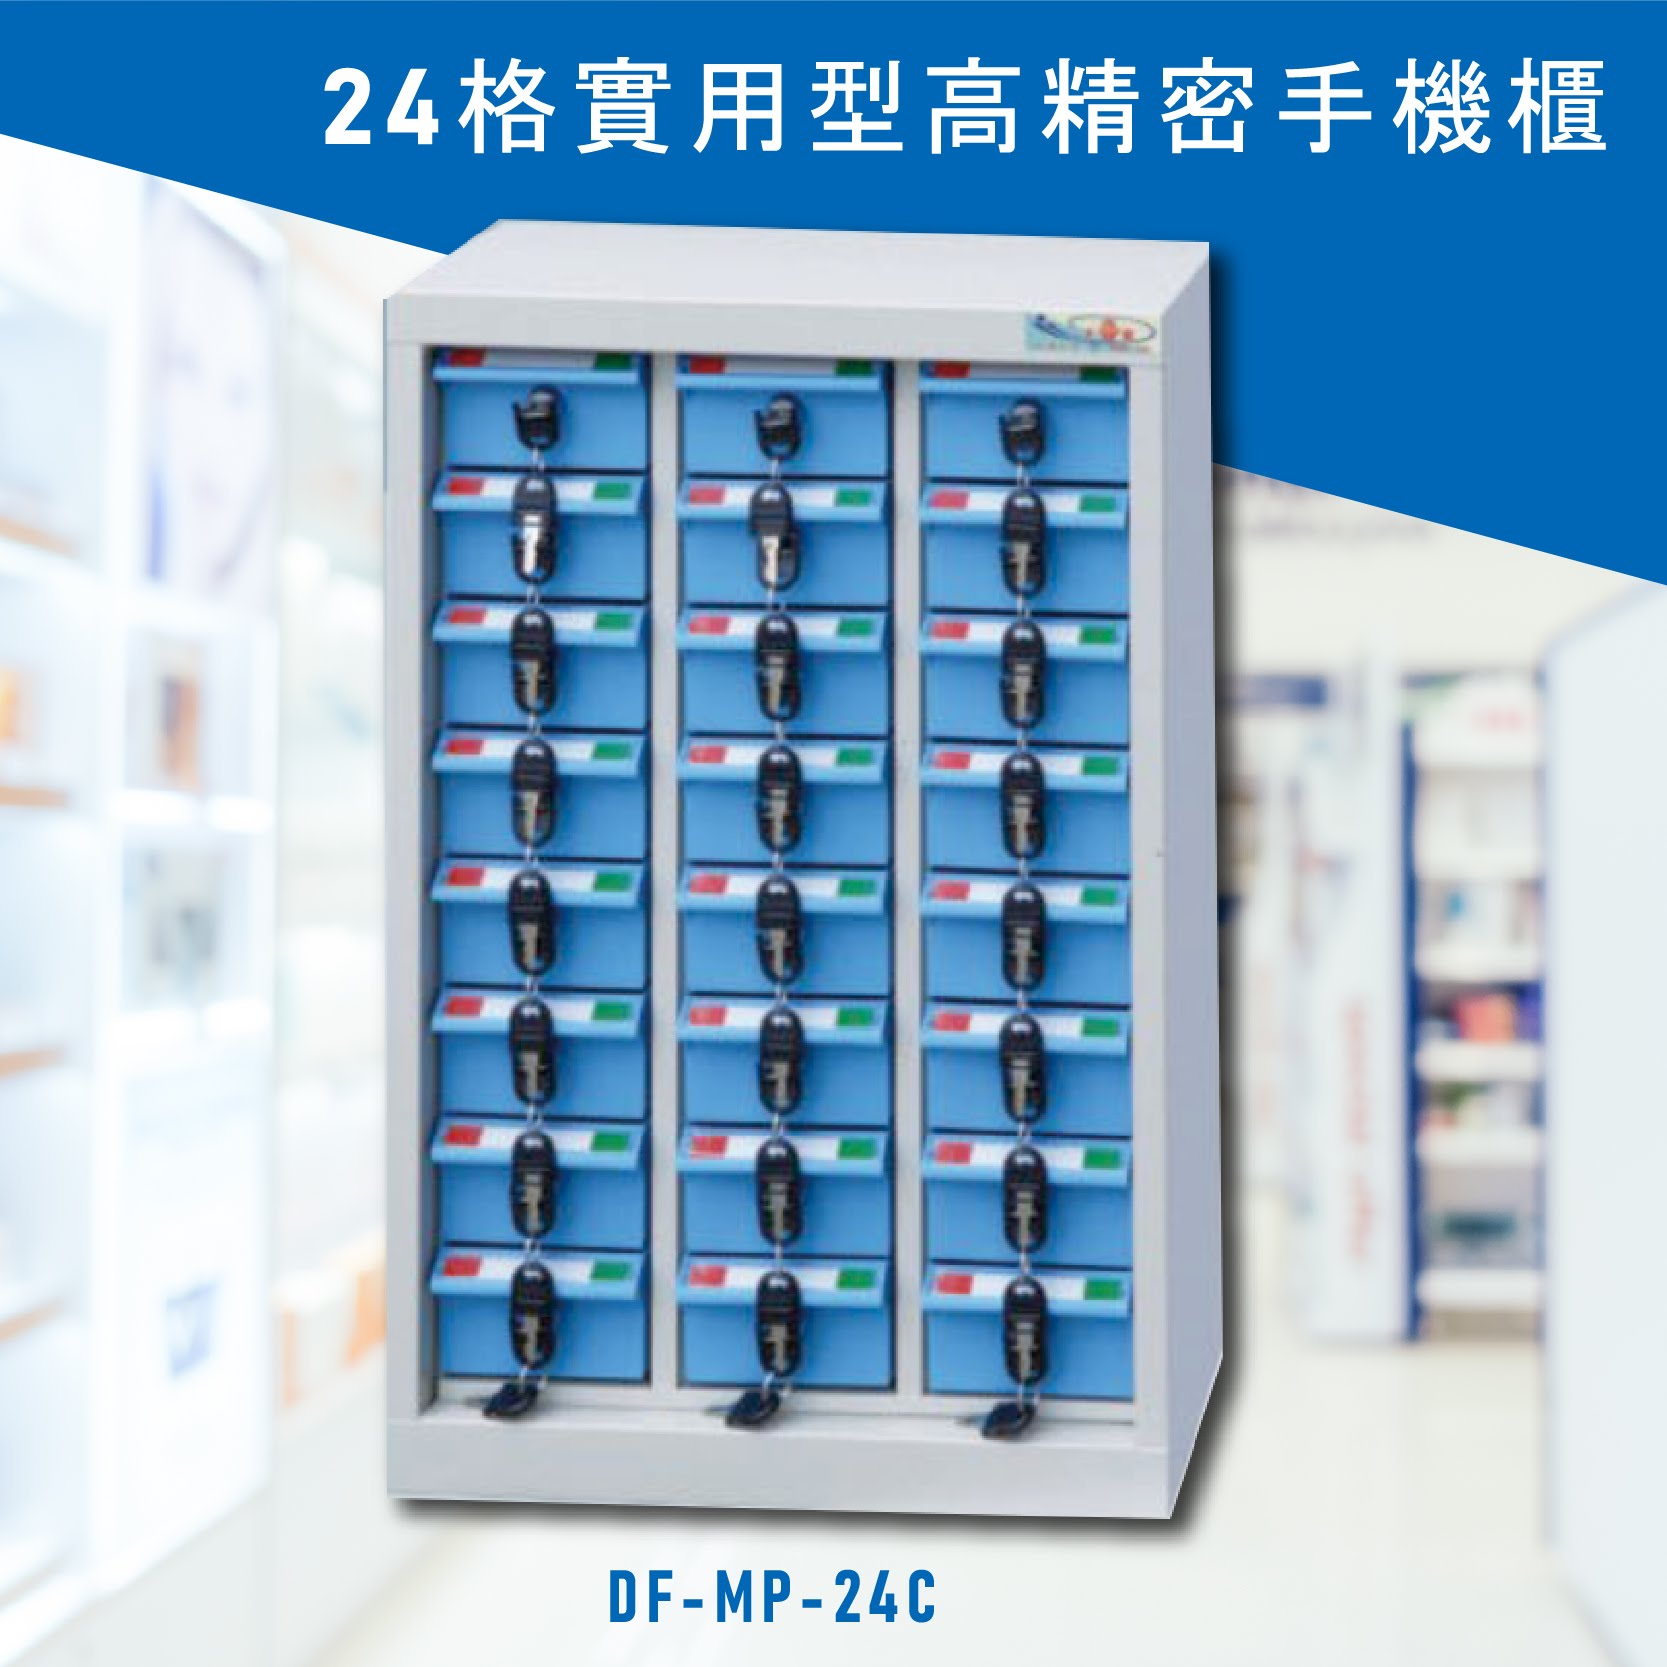 台灣NO.1 大富 實用型高精密零件櫃 DF-MP-24C 收納櫃 置物櫃 公文櫃 專利設計 收納櫃 手機櫃